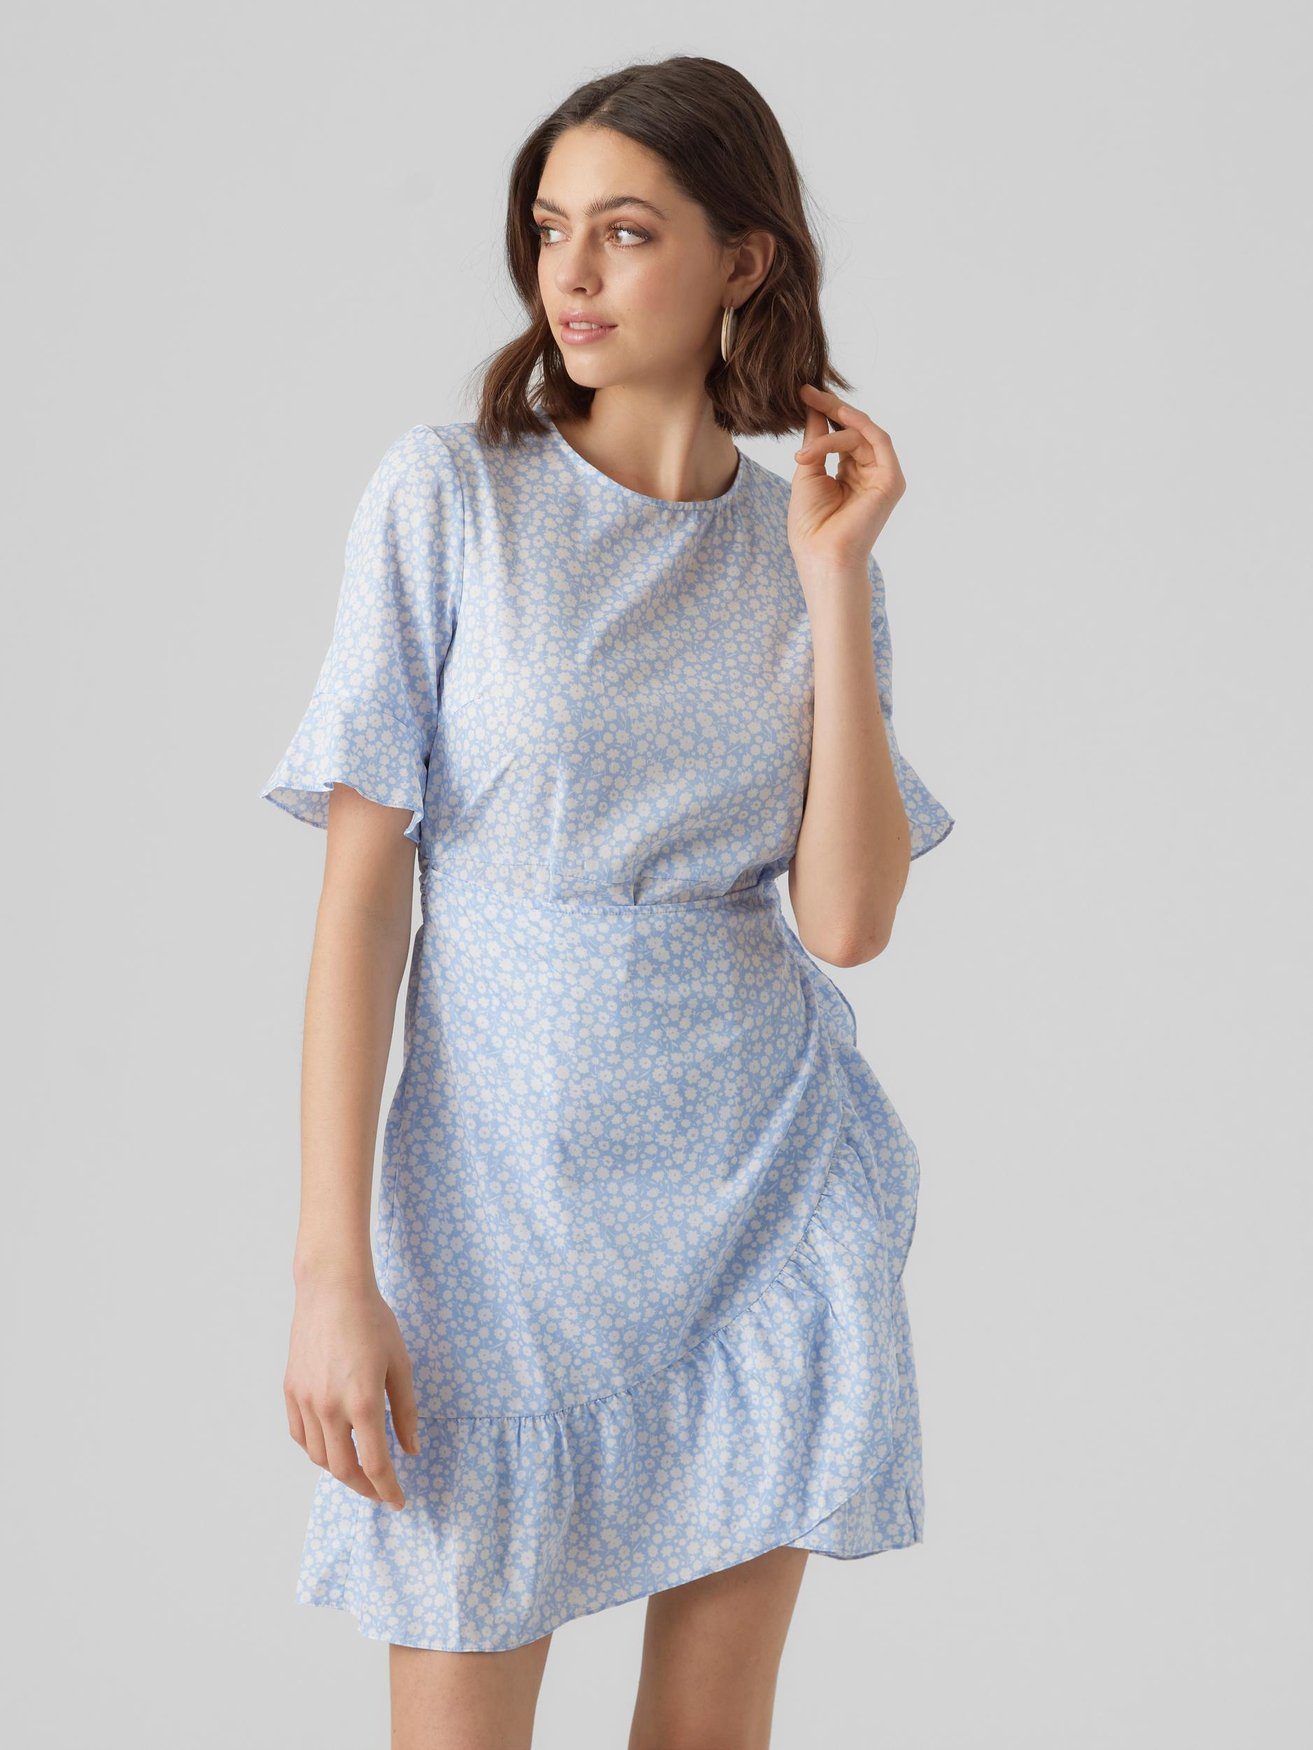 Kurzes Blau Shirtkleid 5775 Moda Vero Kleid in Wickel (kurz) VMHENNA Mini